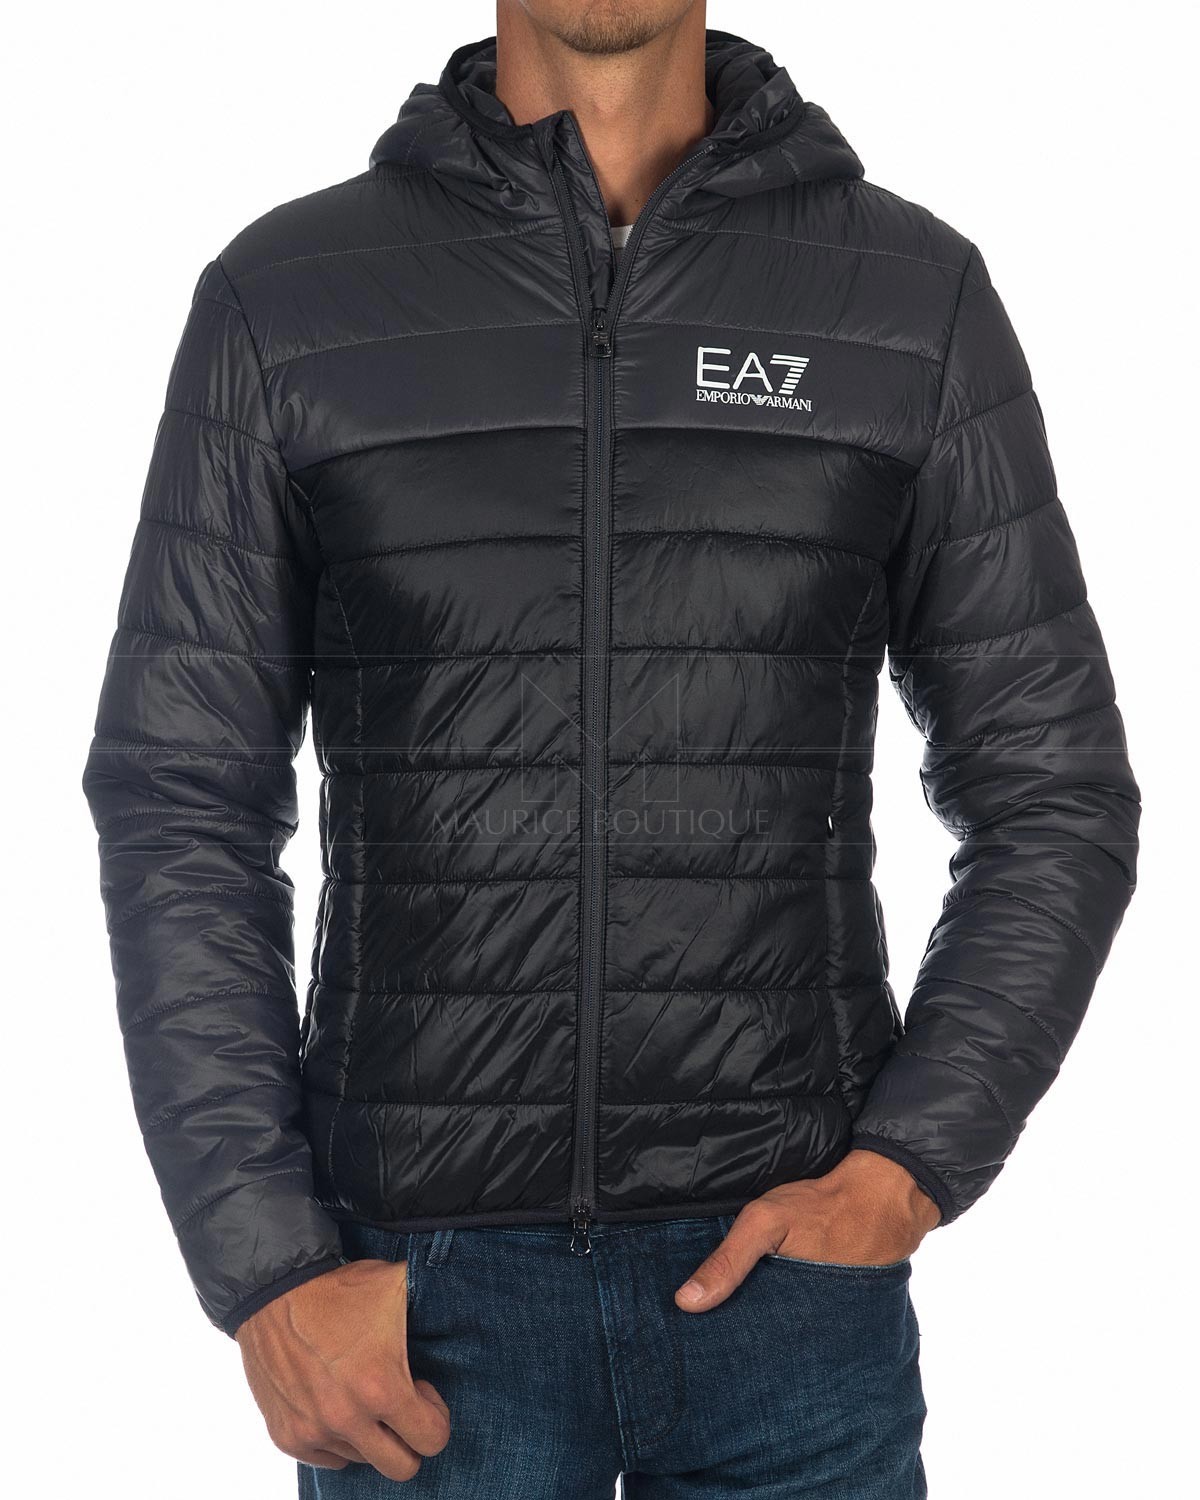 EA7 EMPORIO ARMANI Jackor ea7 emporio armani jacka hoodie - svart vit logotyp YJVEFUK